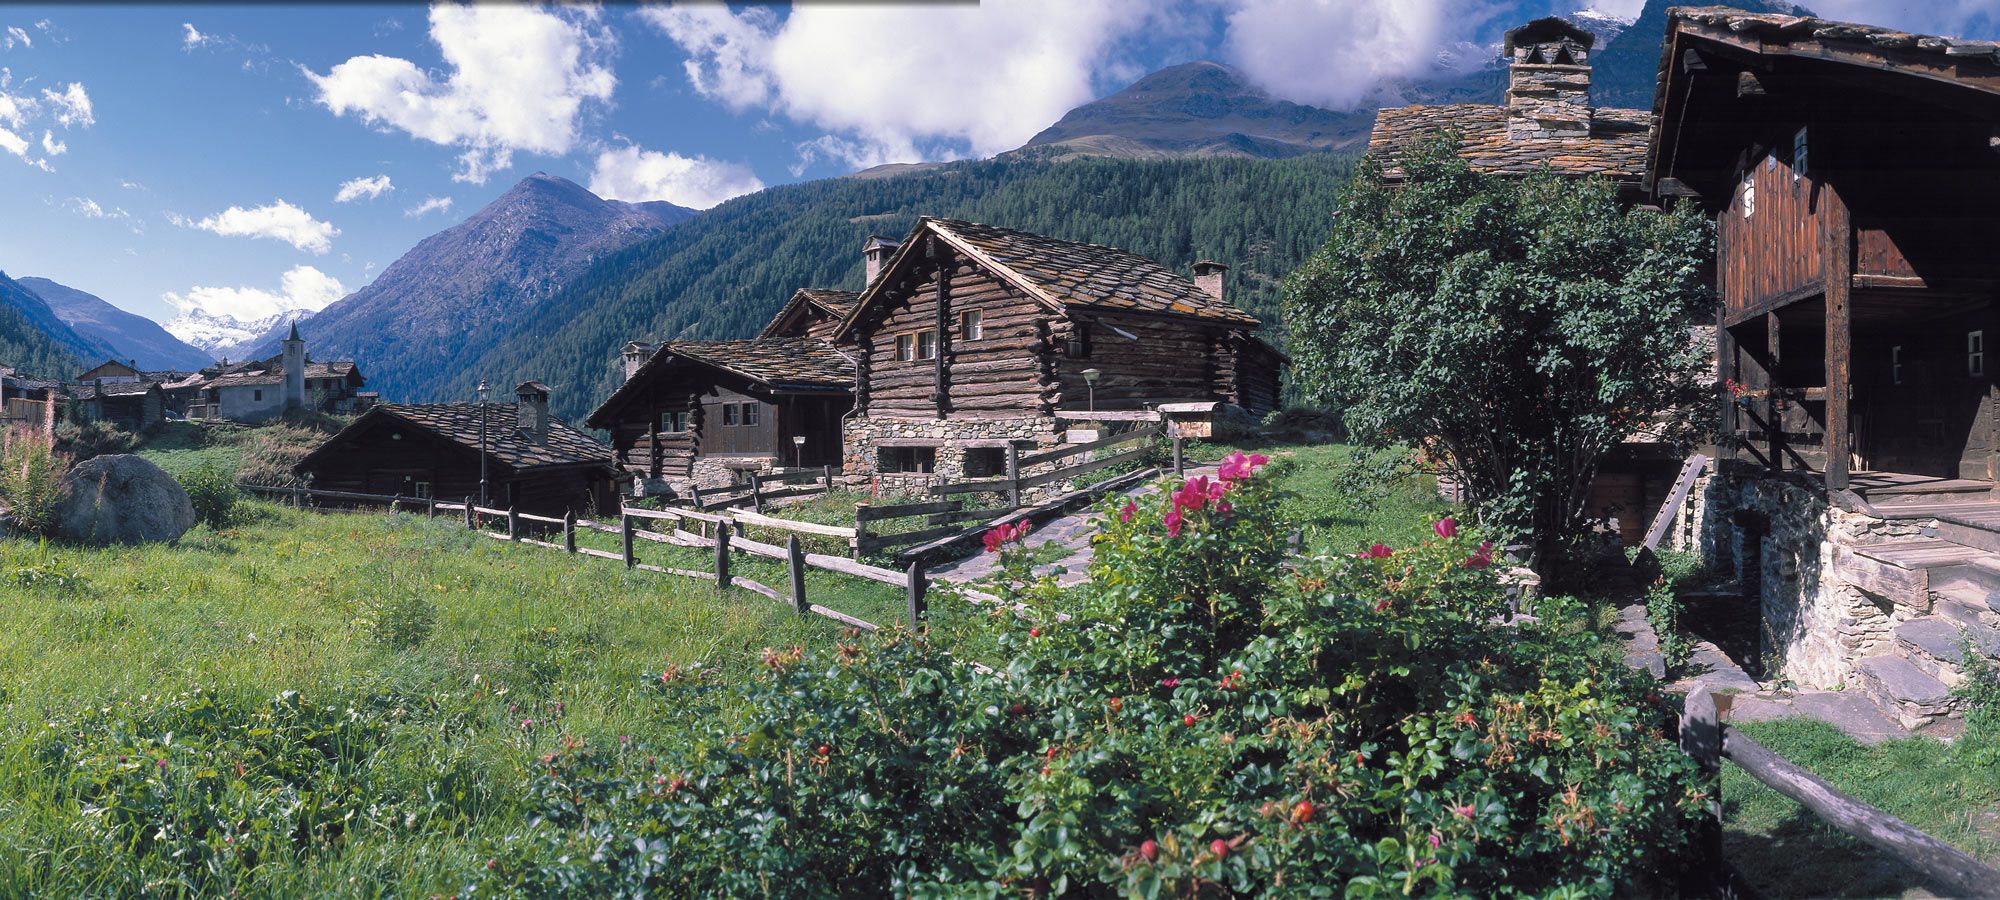 Valsavarenche, villaggi alpini